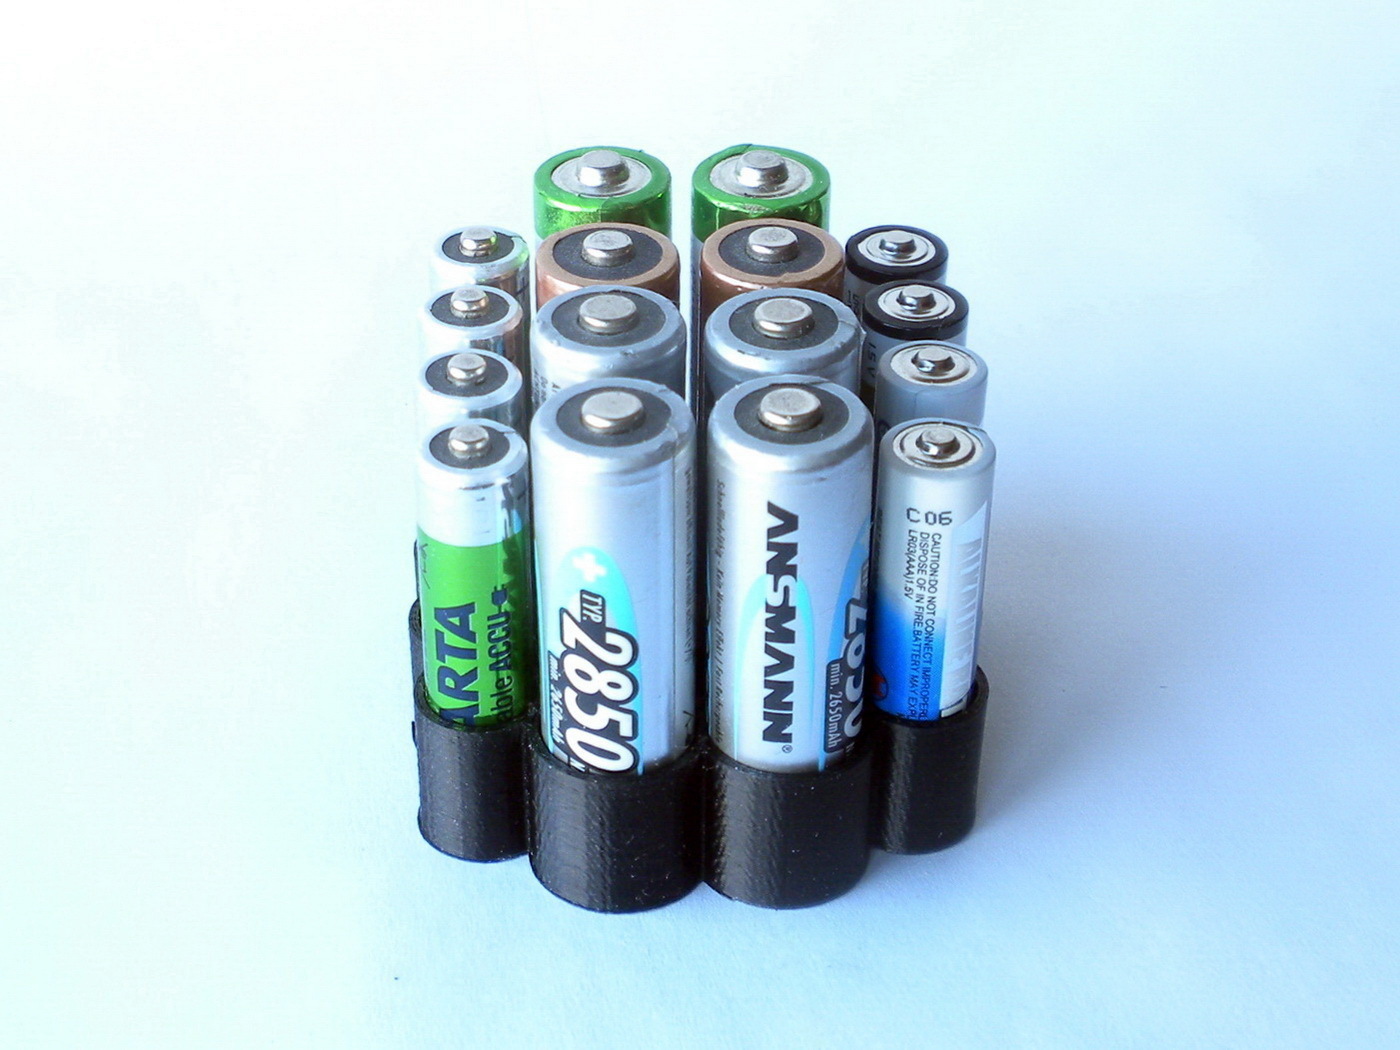 Aaa battery. 3xlr03 батарейка. Battery AA AAA STL. Бокс на 3 батарейки АА. 3д модель холдер для ААА батареек.